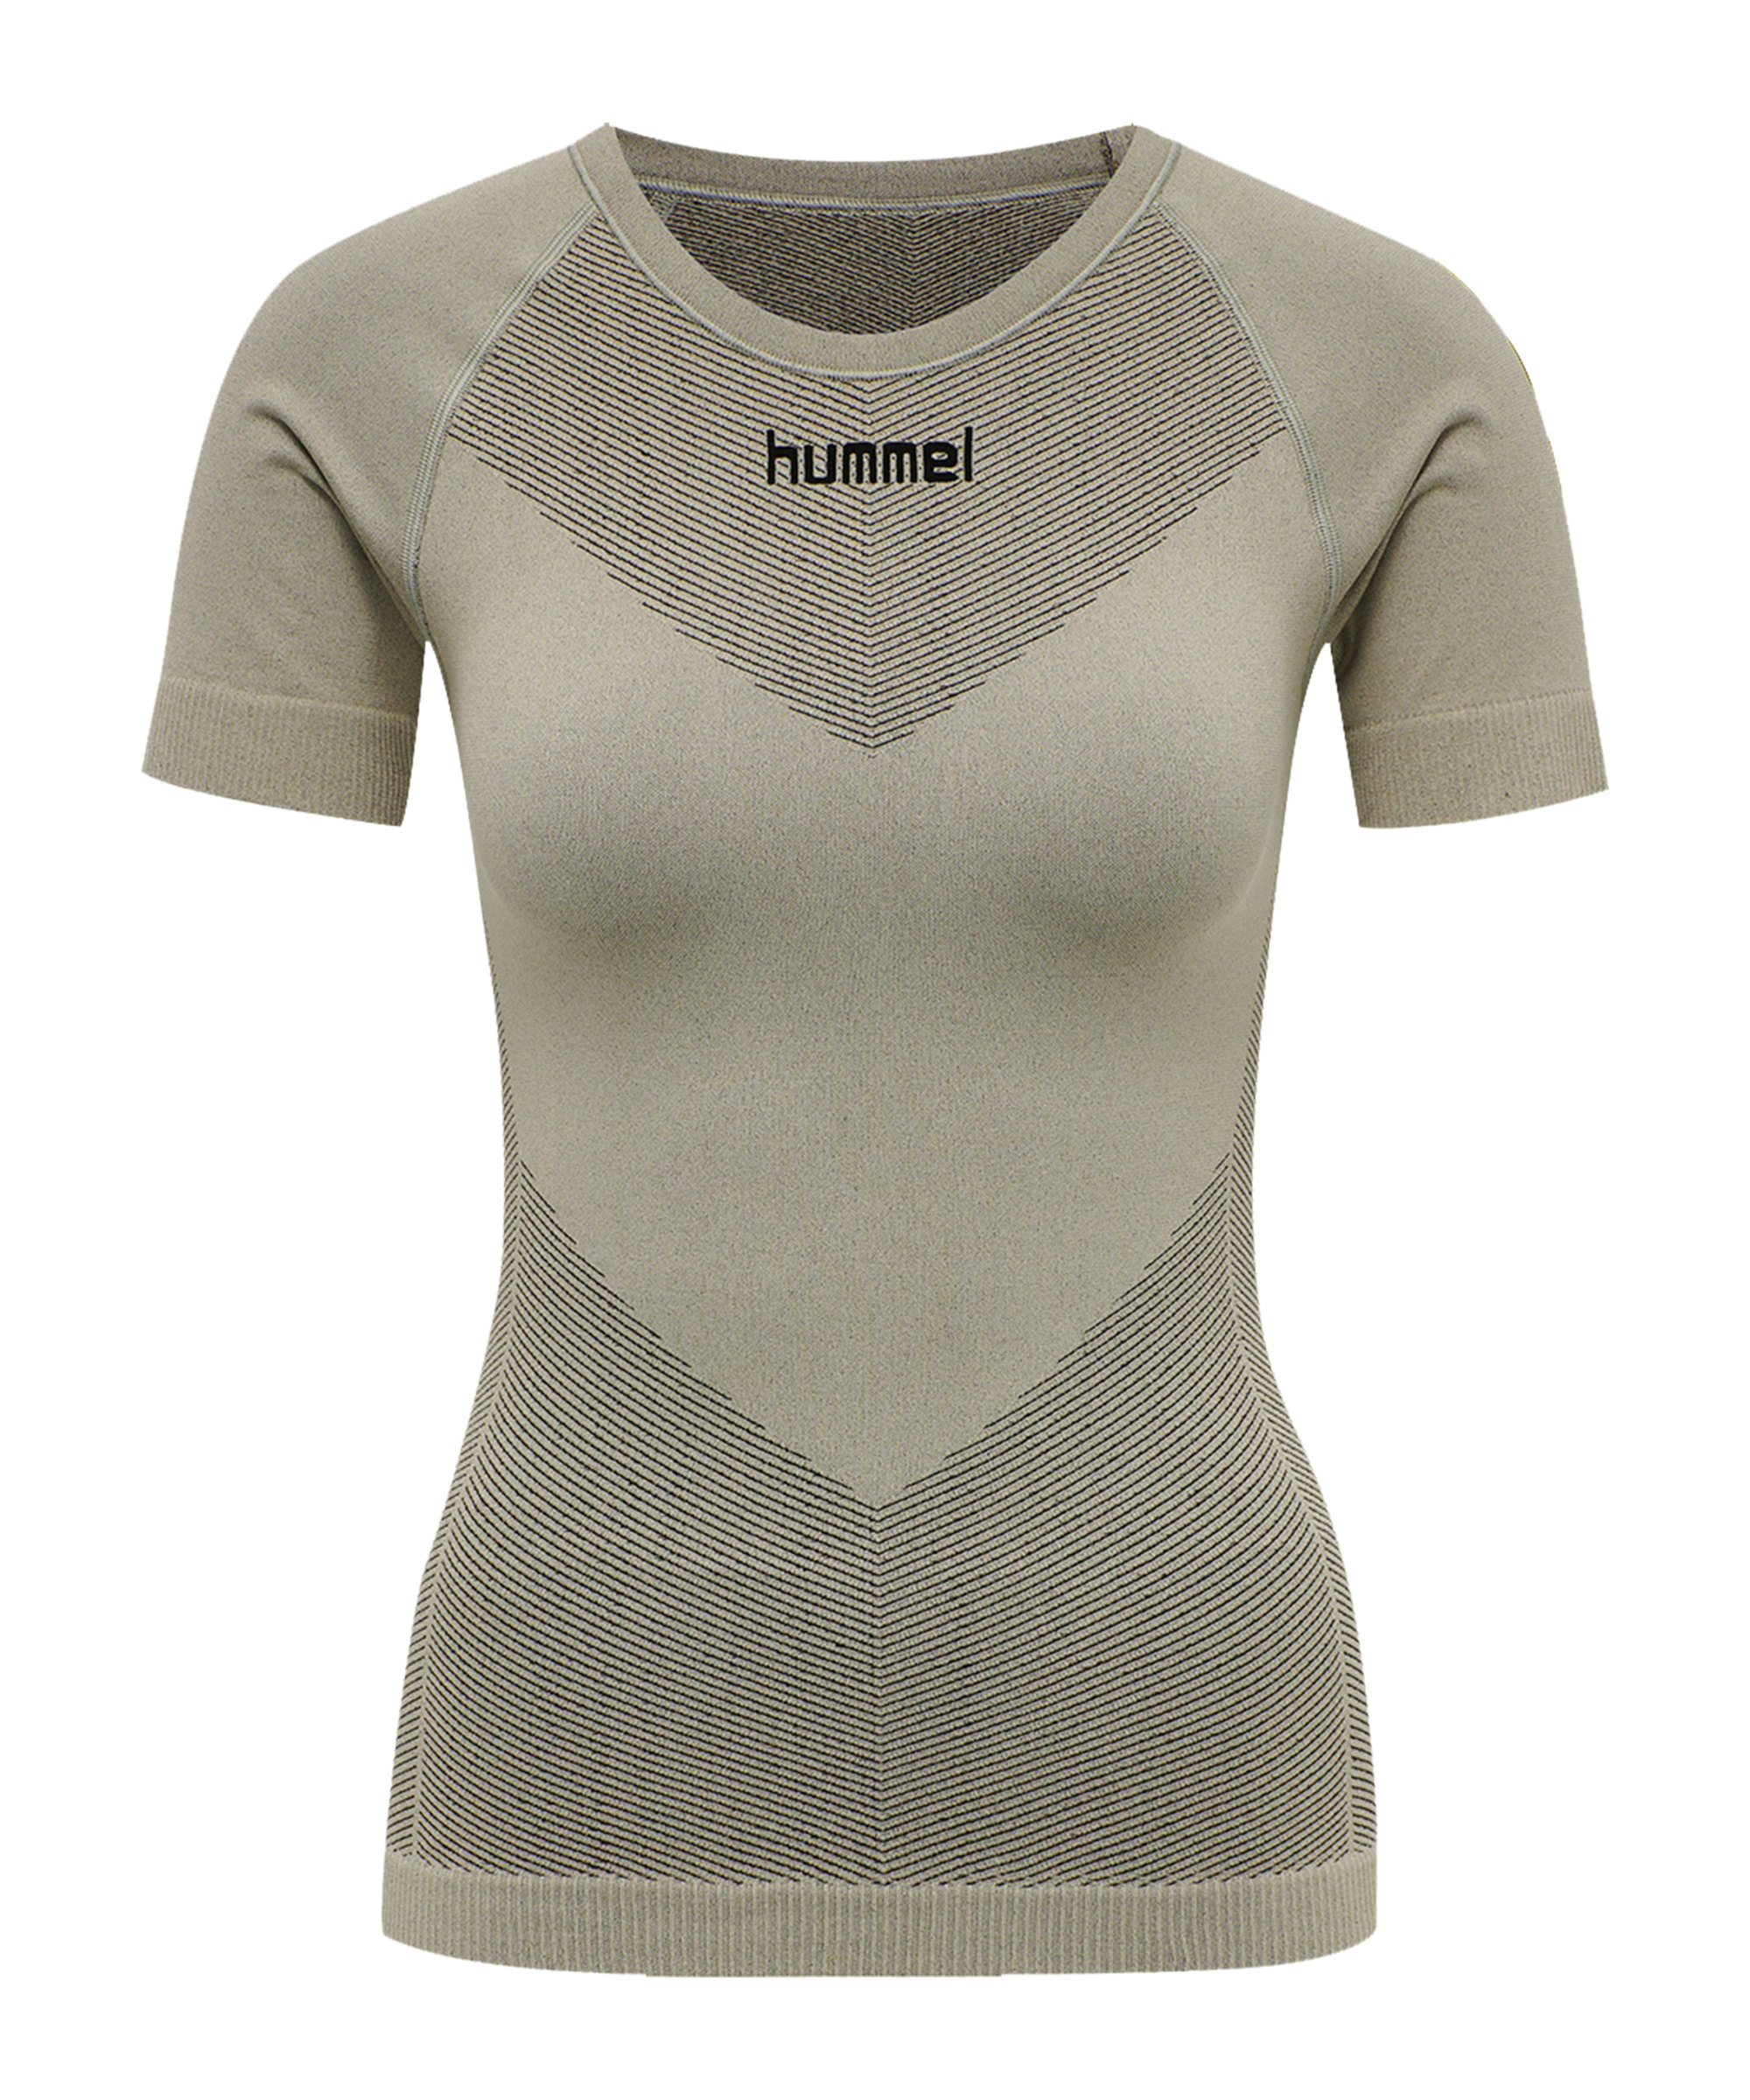 Hummel First Seamless T-Shirt Damen Grün F2931 - gruen